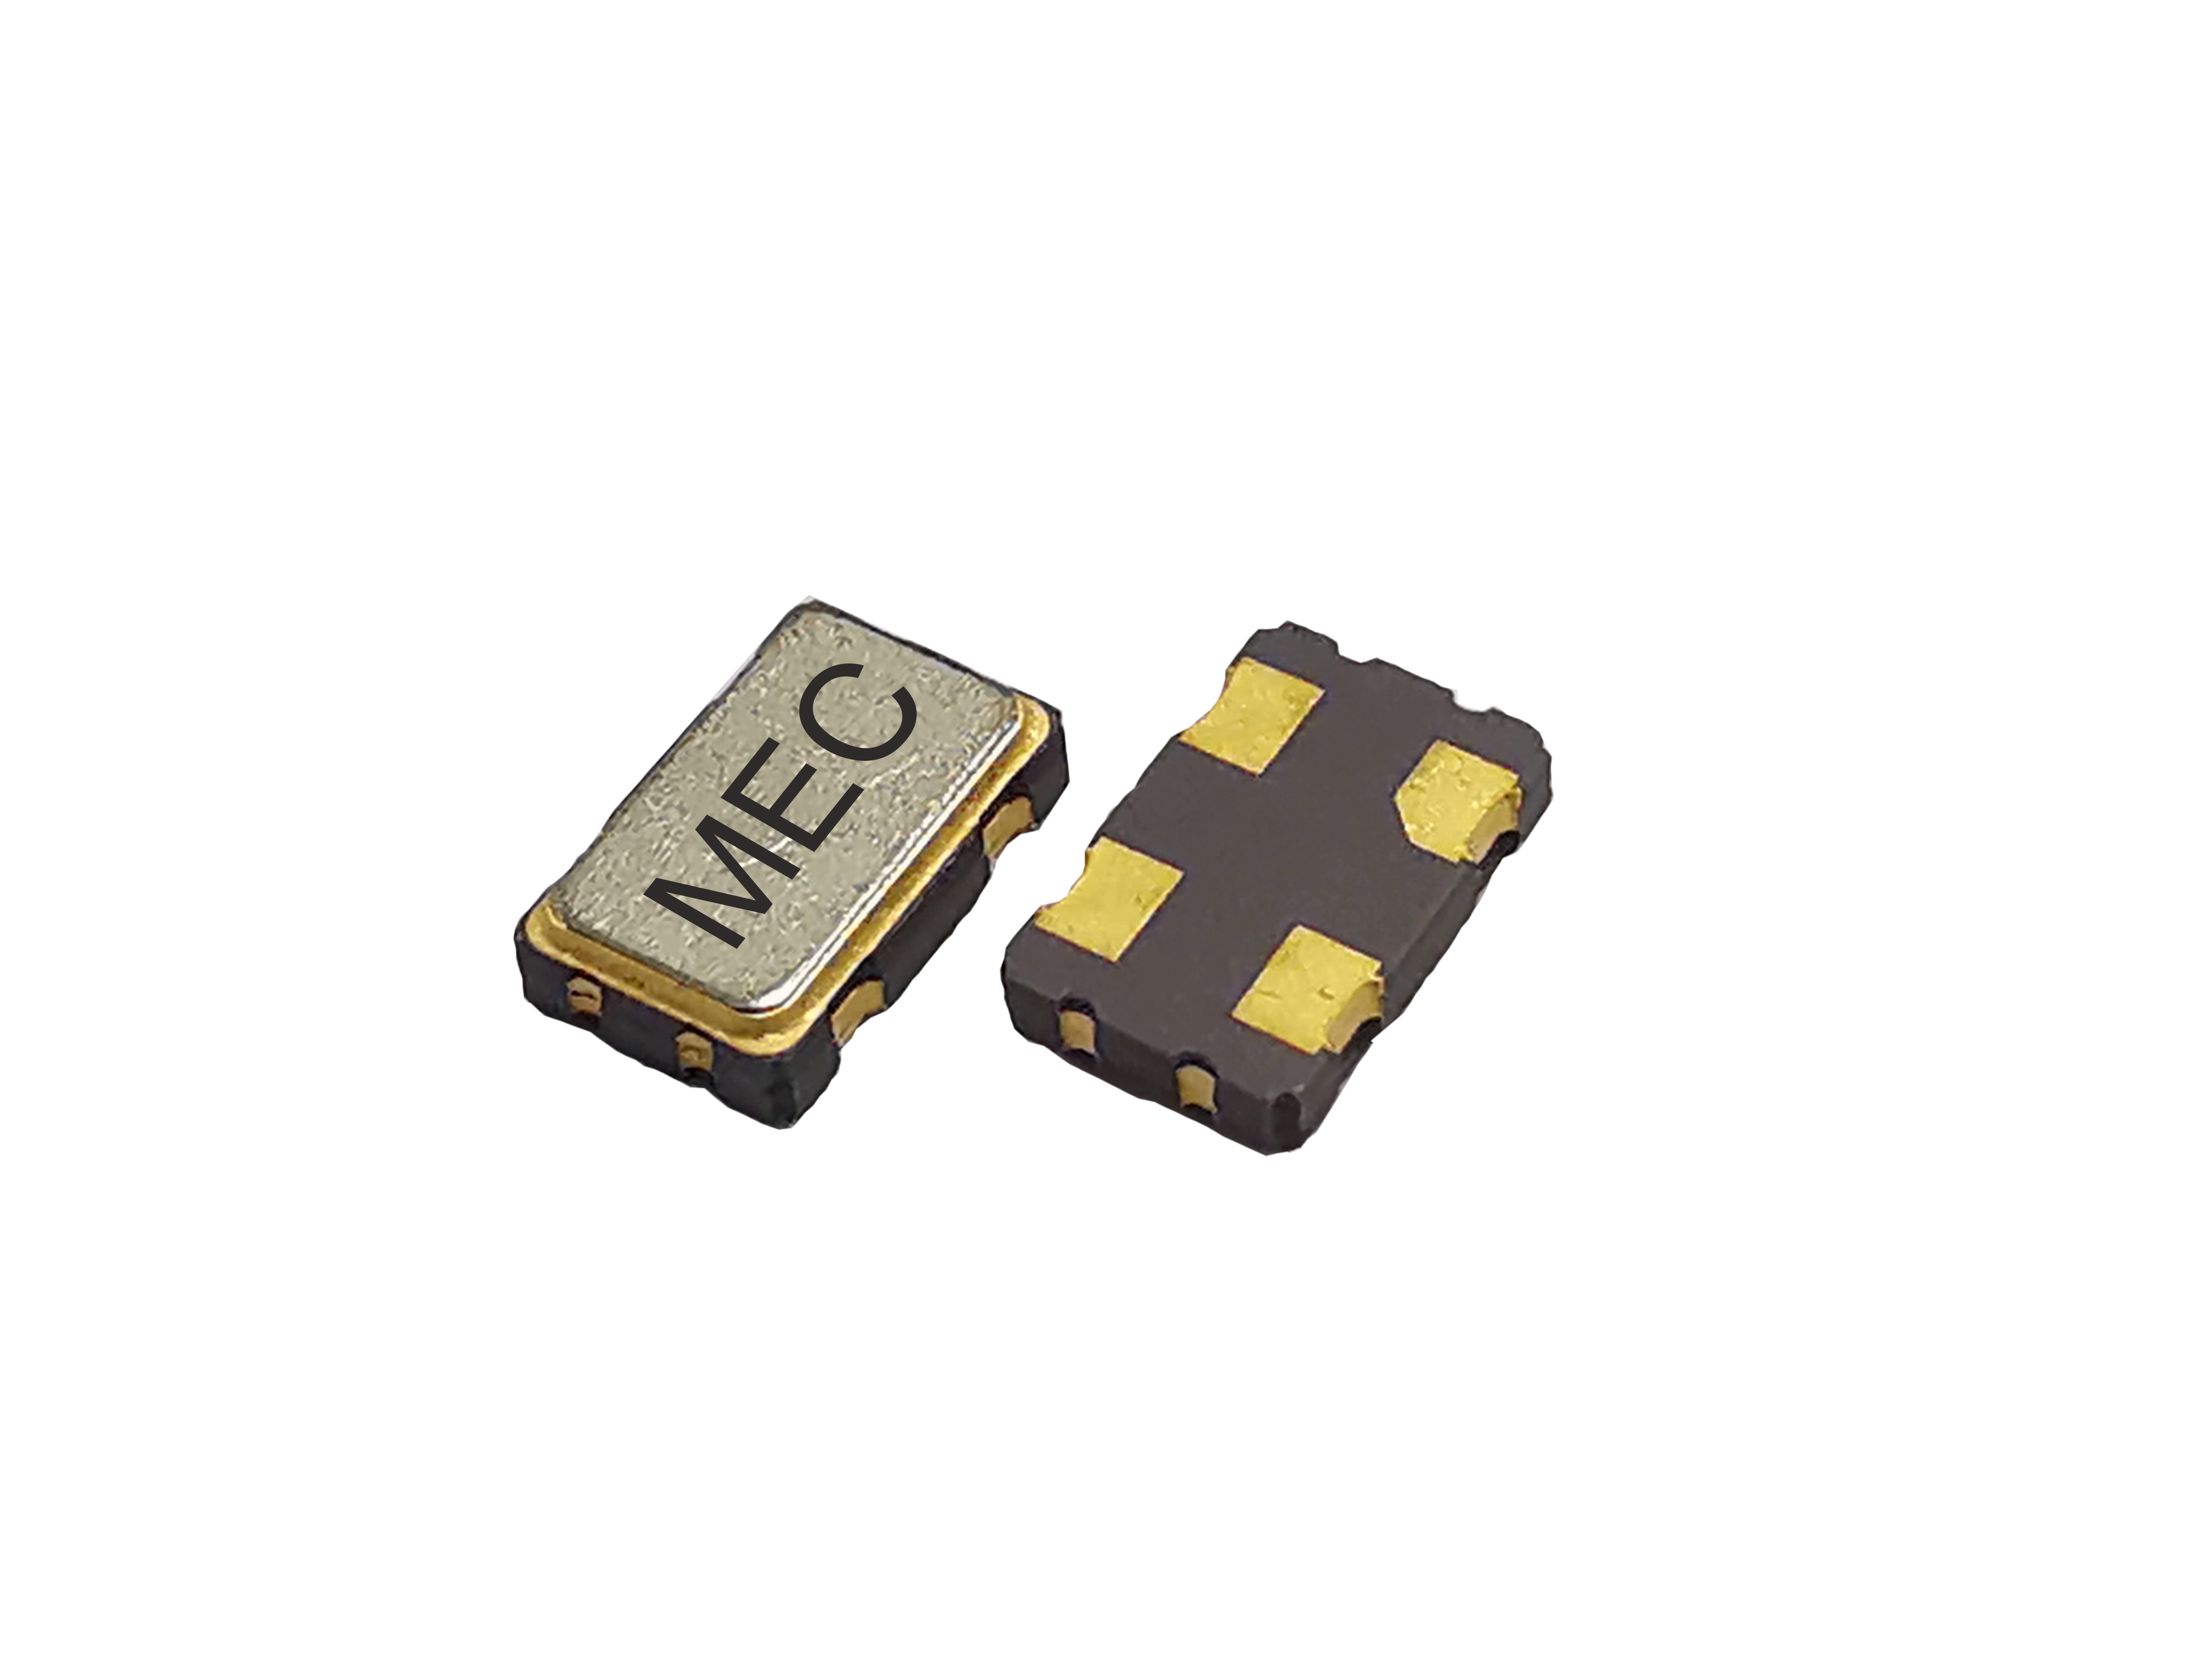 H53 5032 1.8V CMOS SMD Crystal Oscillator